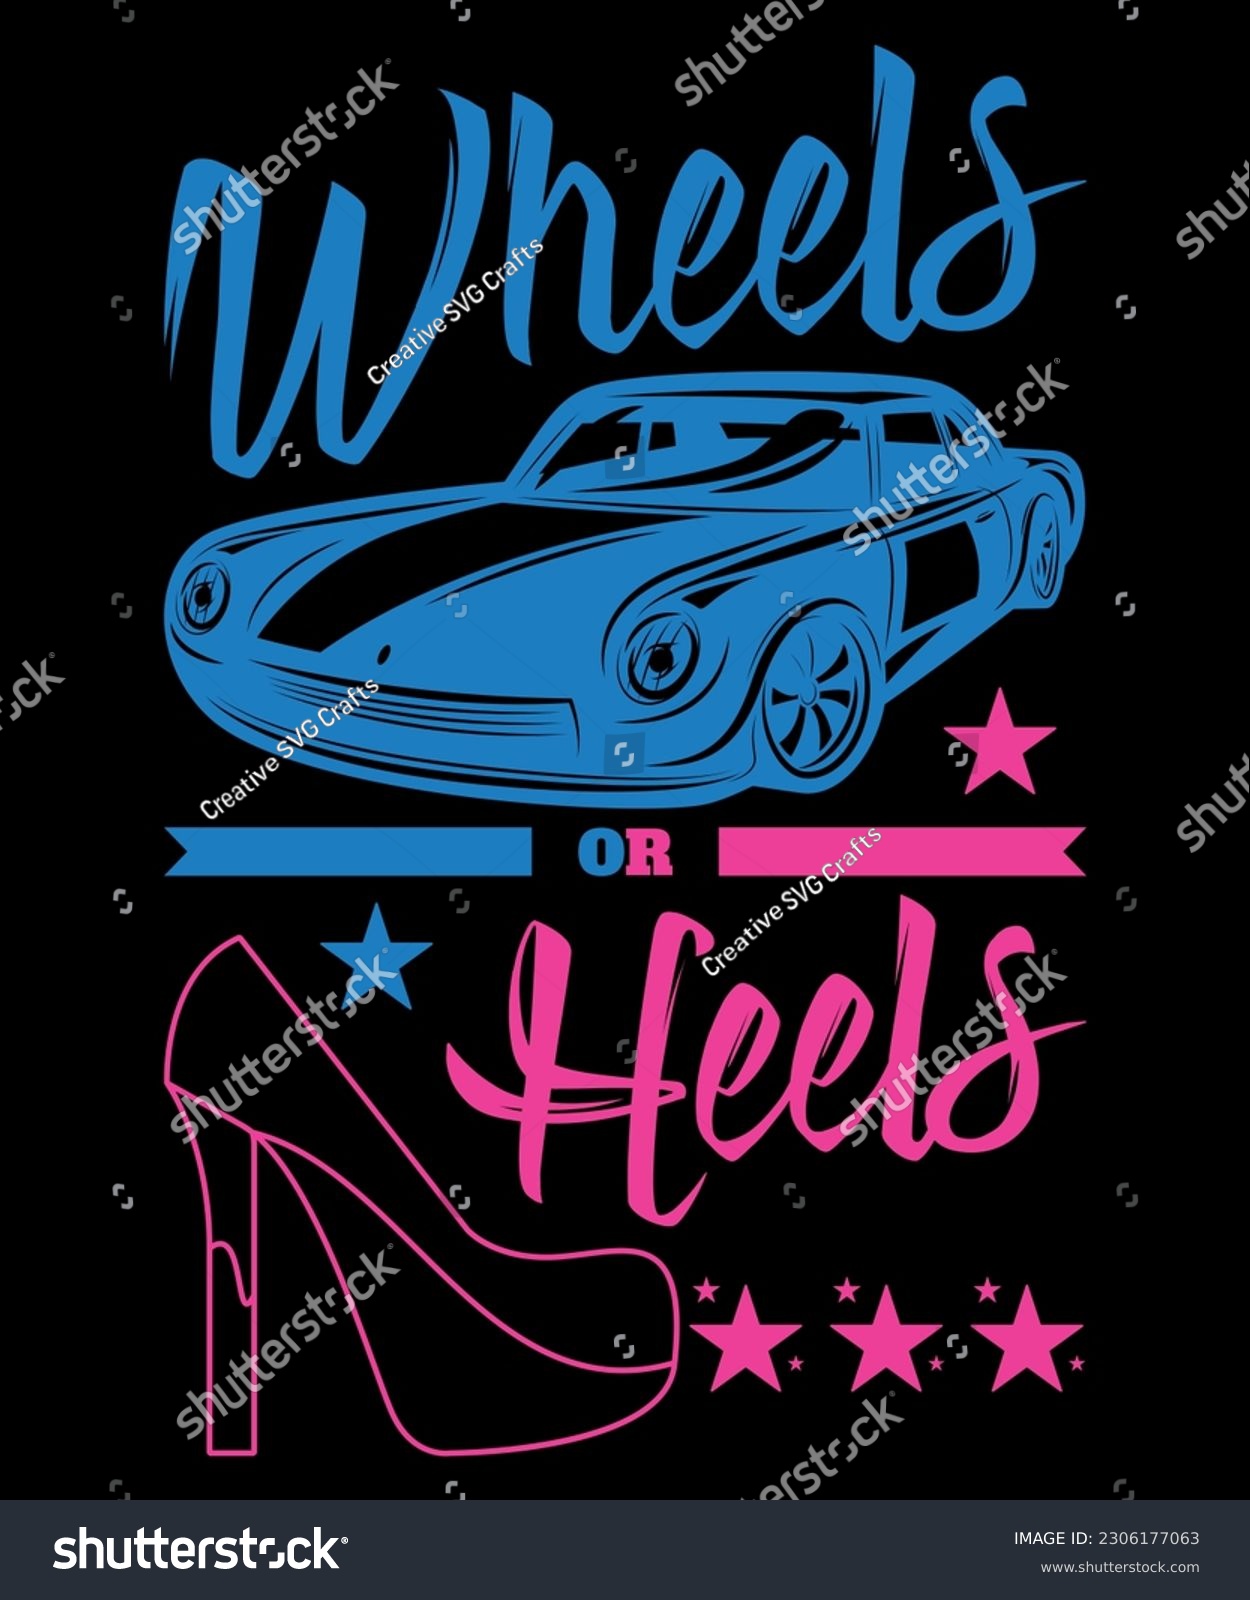 SVG of Wheels Or Heels, Gender Reveal Shirts, Shirt Print Template SVG svg